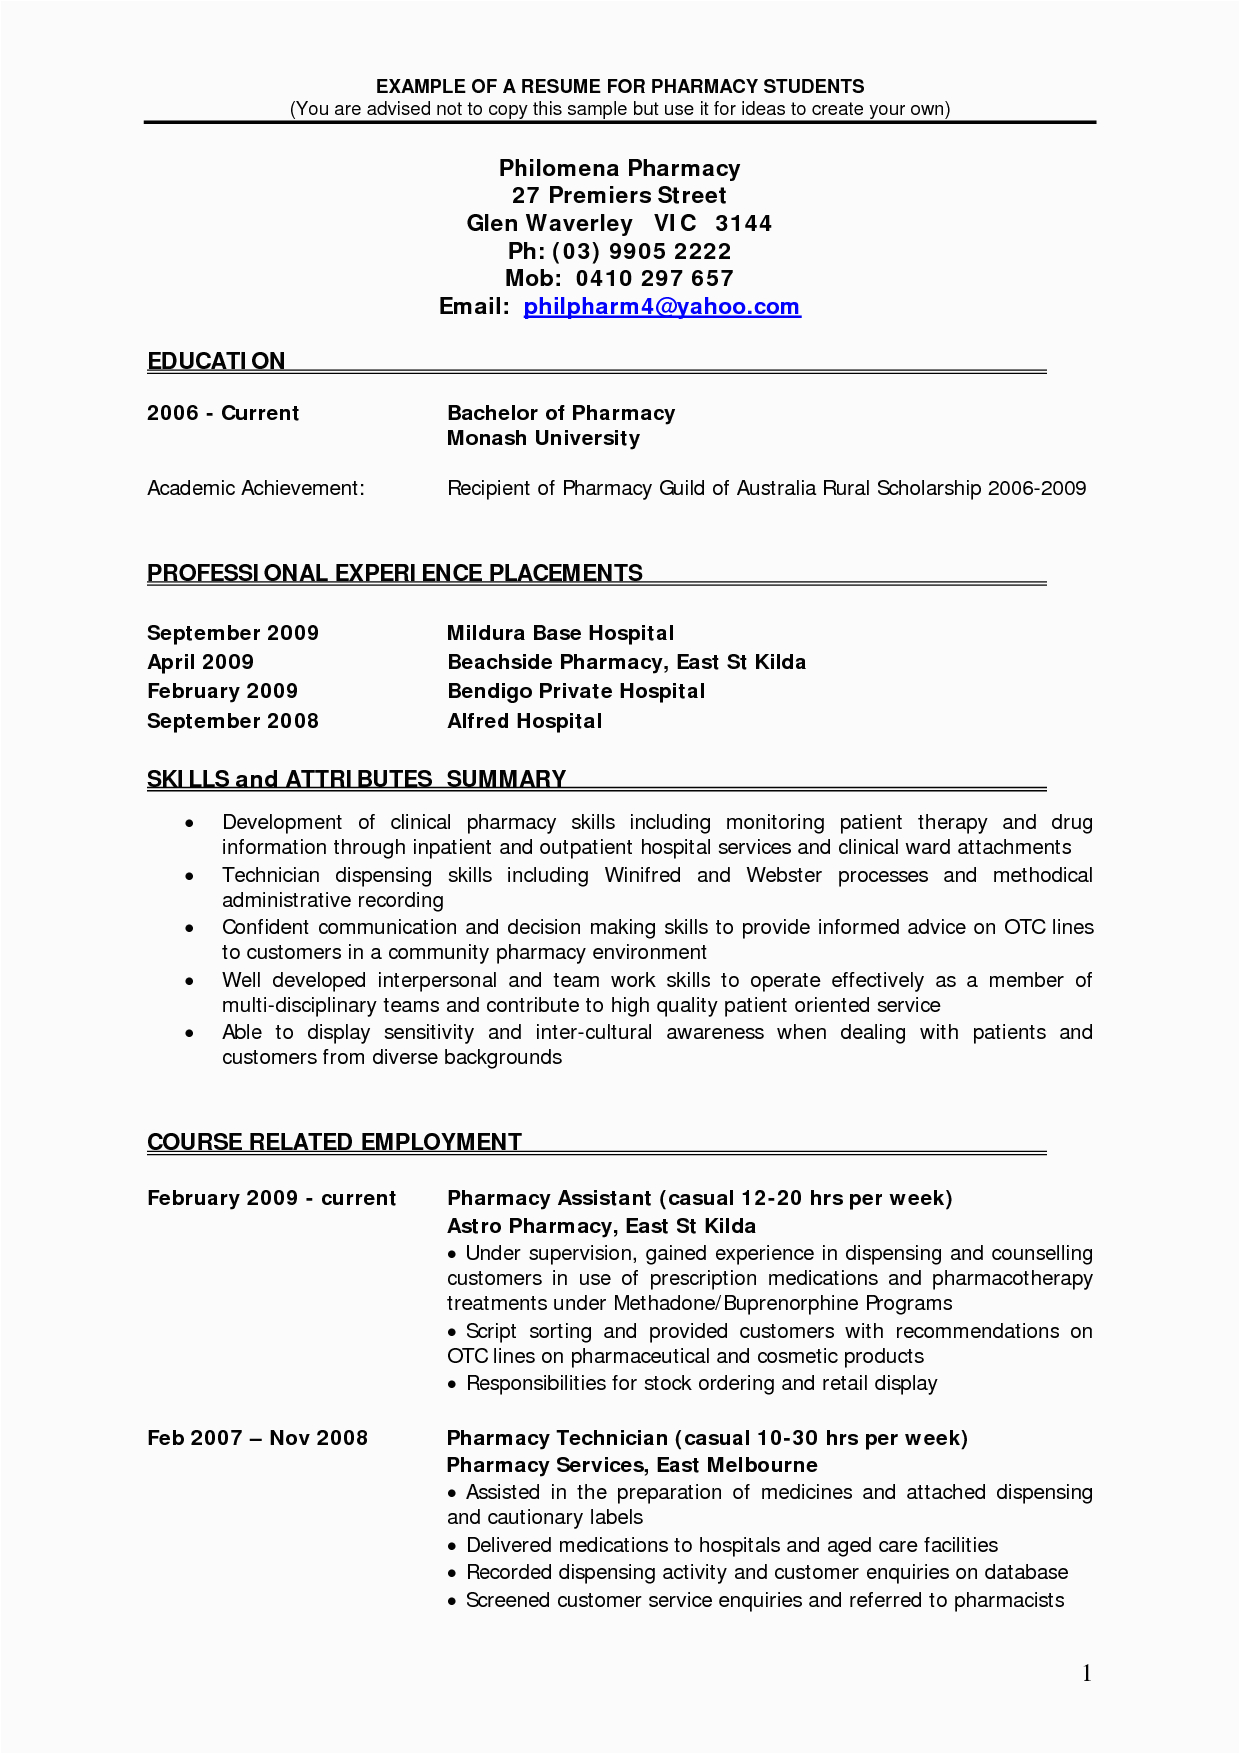 Sample Resume for Fresh Graduate Pharmacist Pharmacist Resume Sample